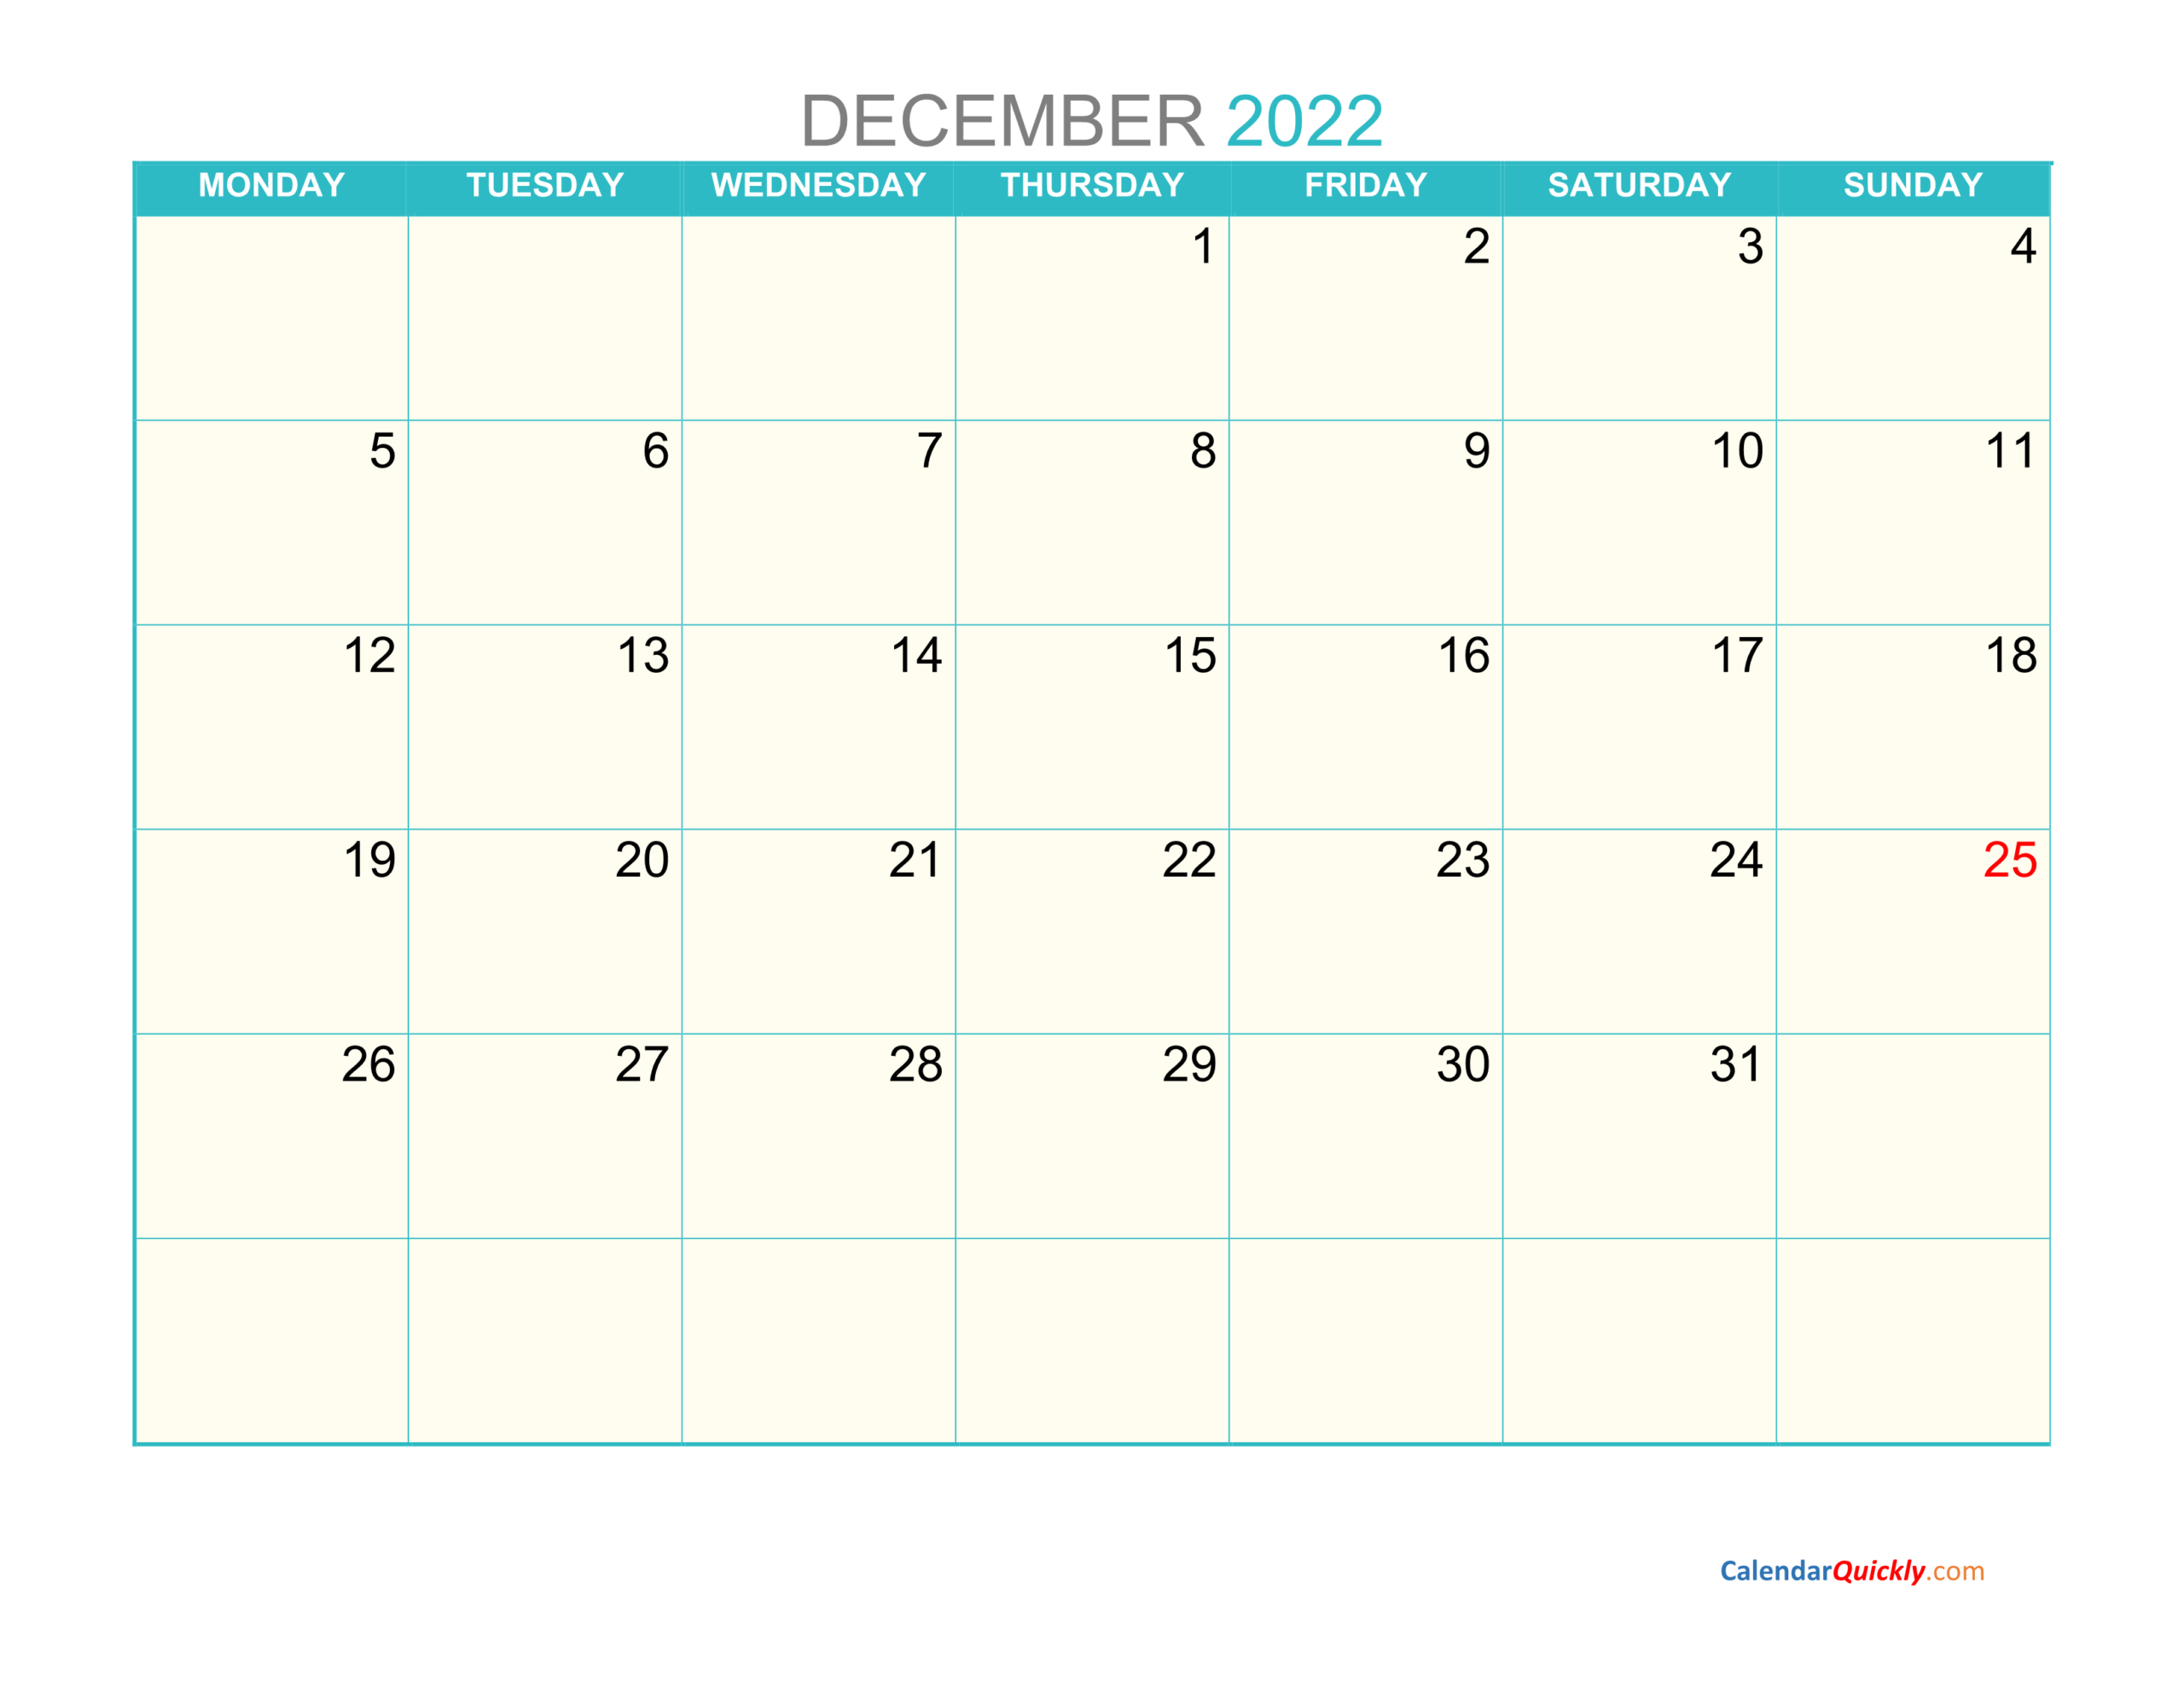 December Monday 2022 Calendar Printable | Calendar Quickly  December Calendar Of 2022